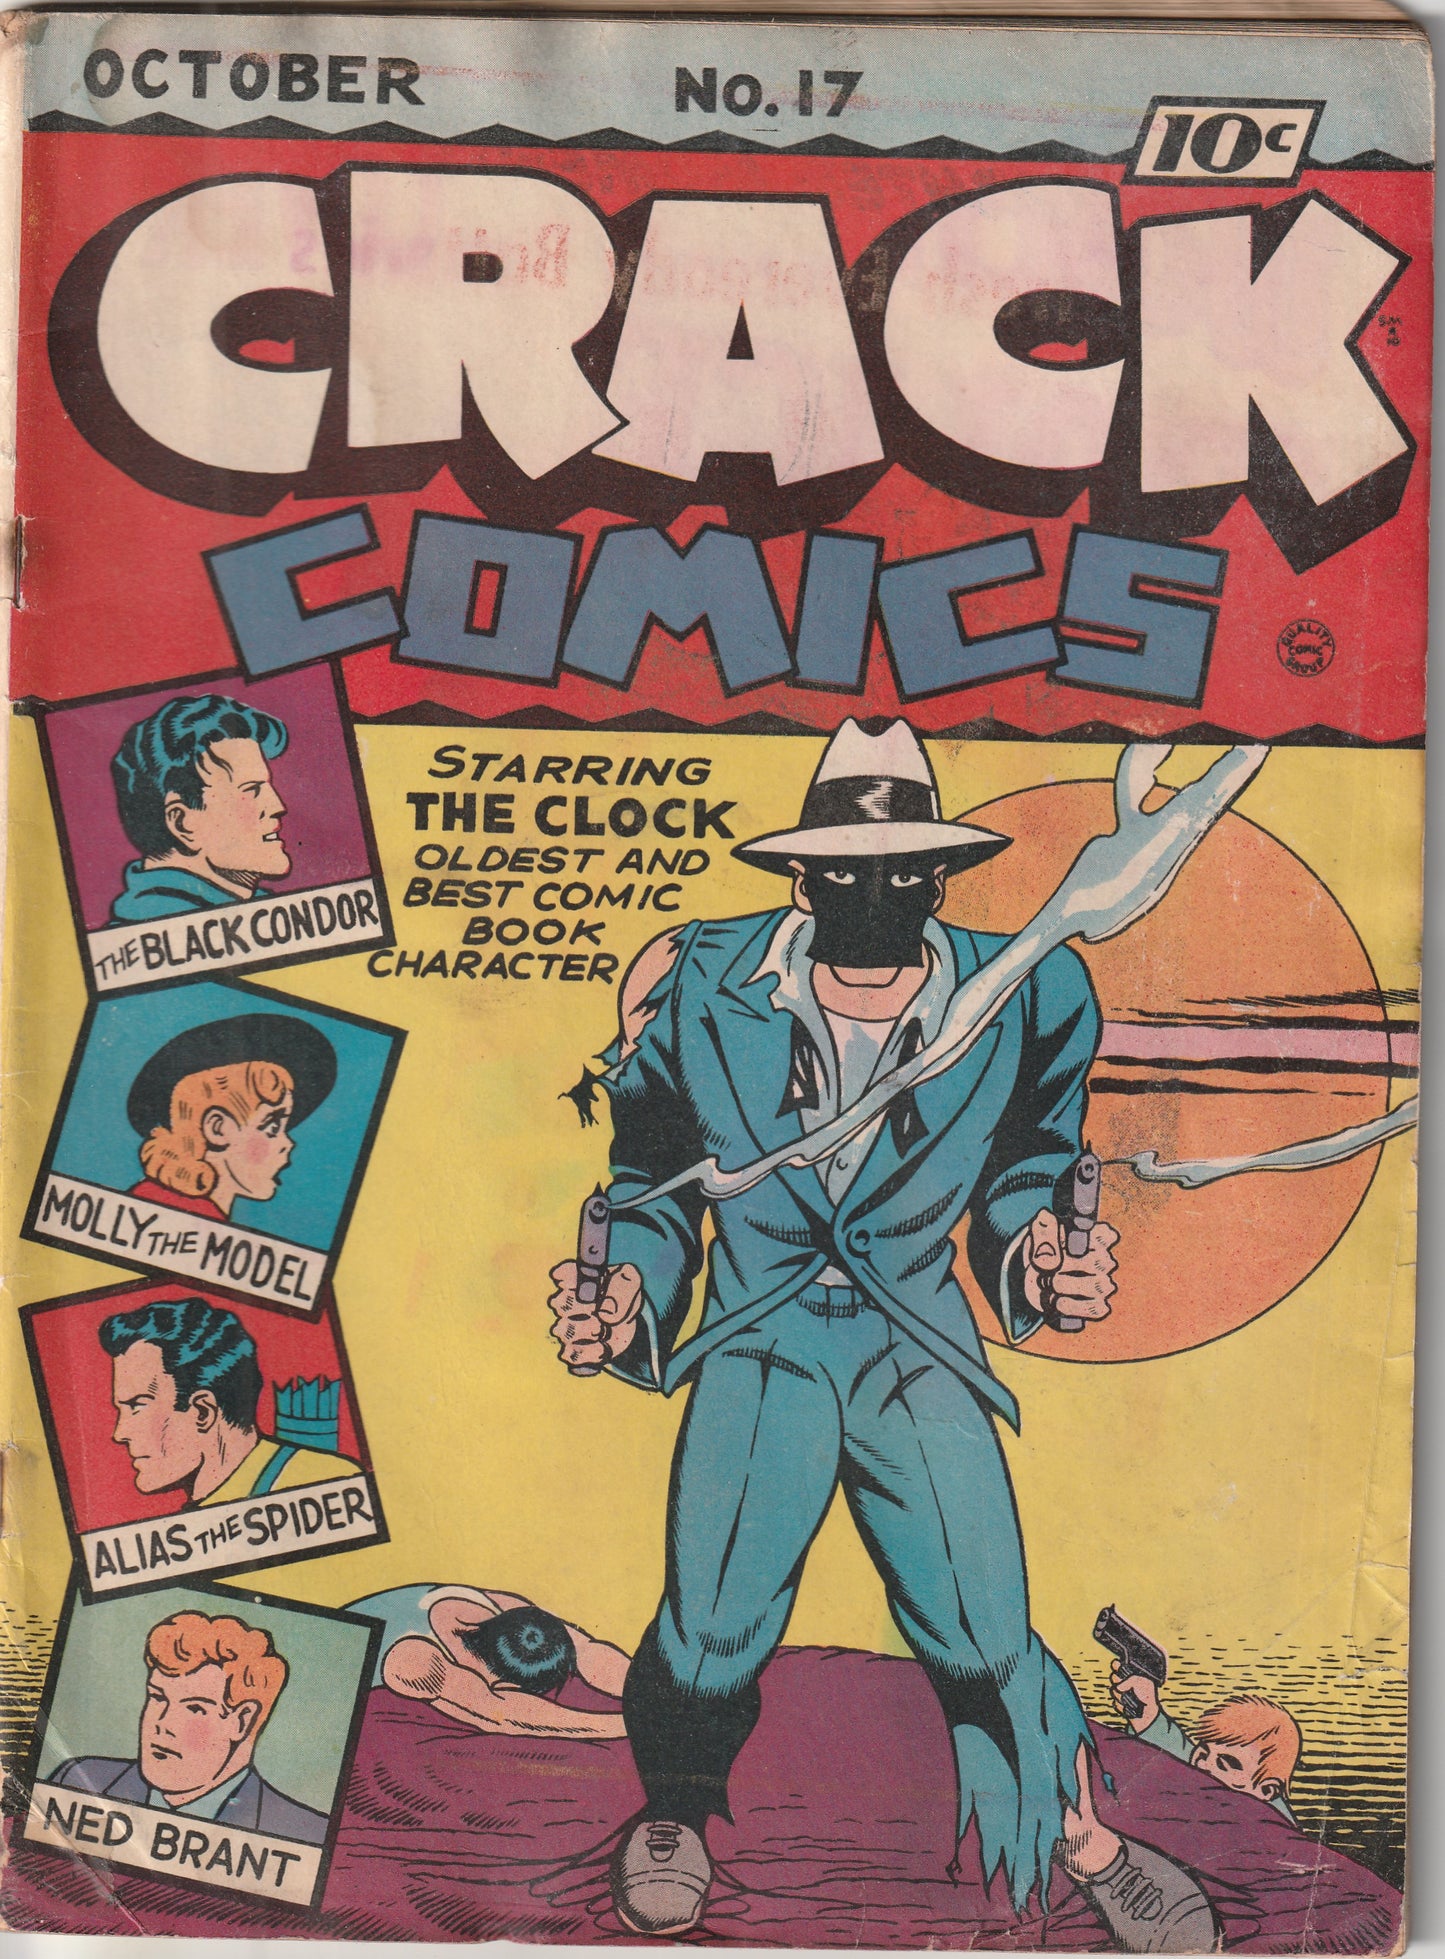 Crack Comics #17 (1941) - Black Condor by Lou Fine